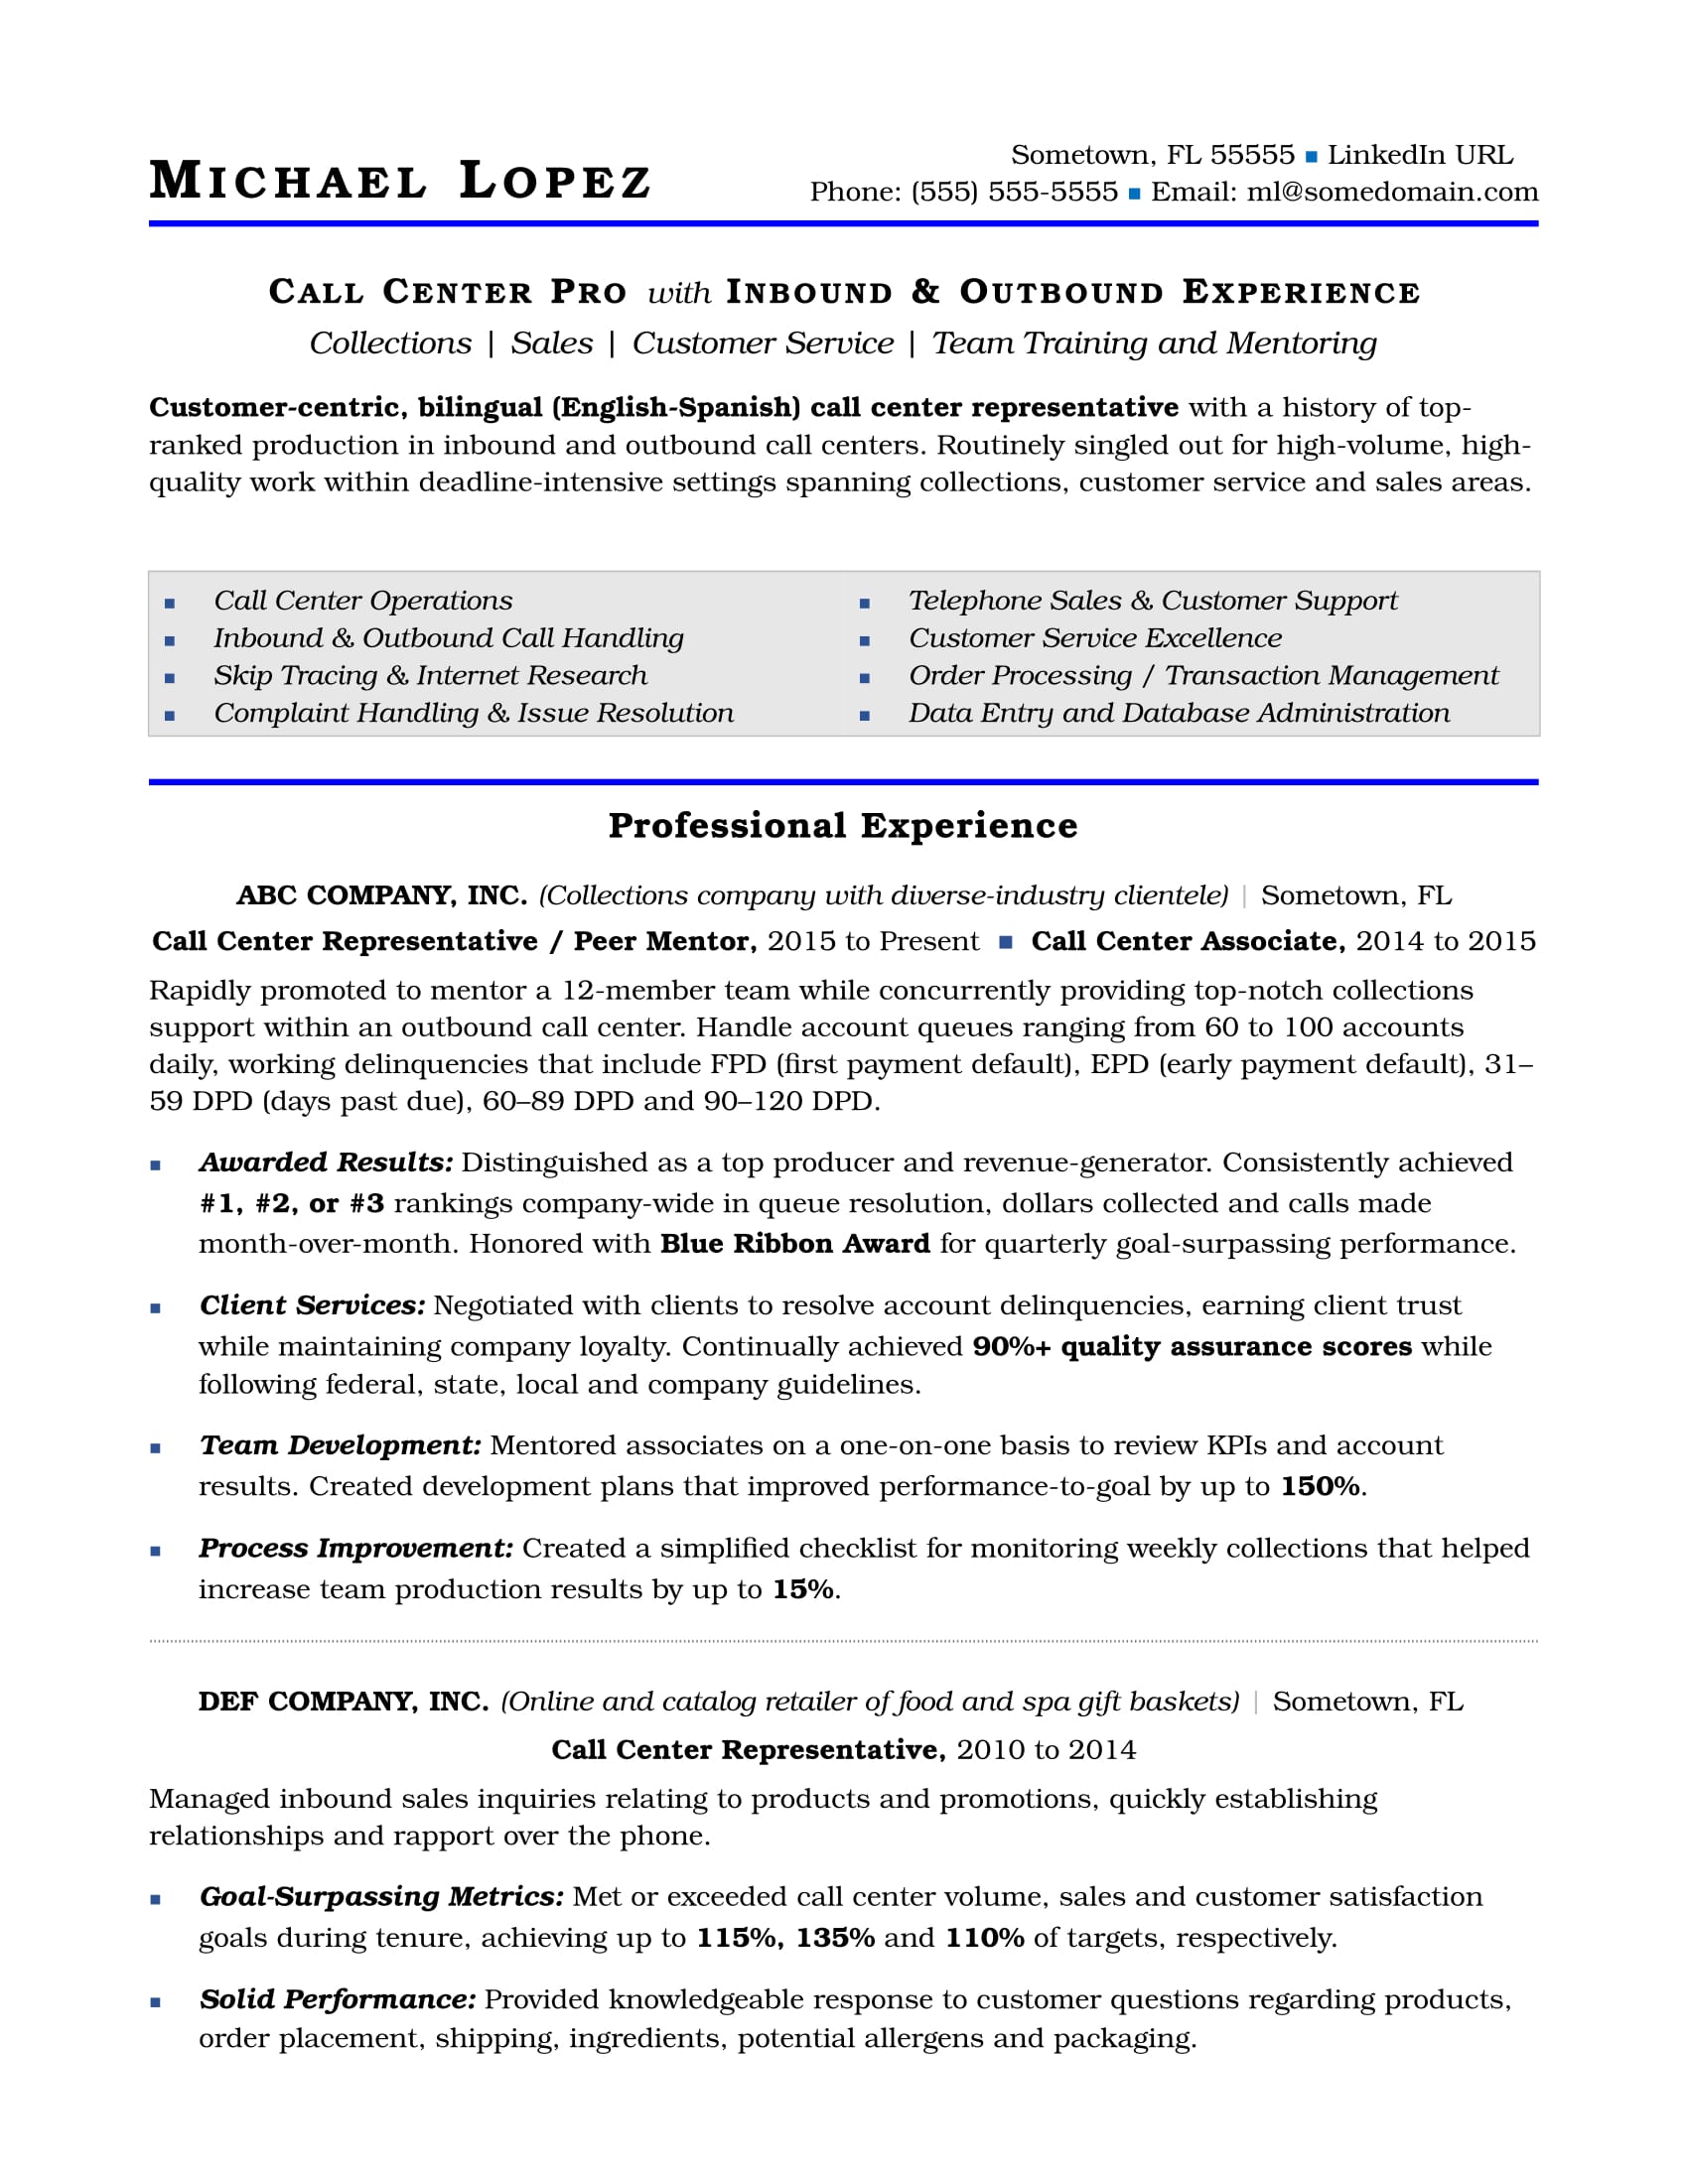 Call Center Resume Sample | Monster.com